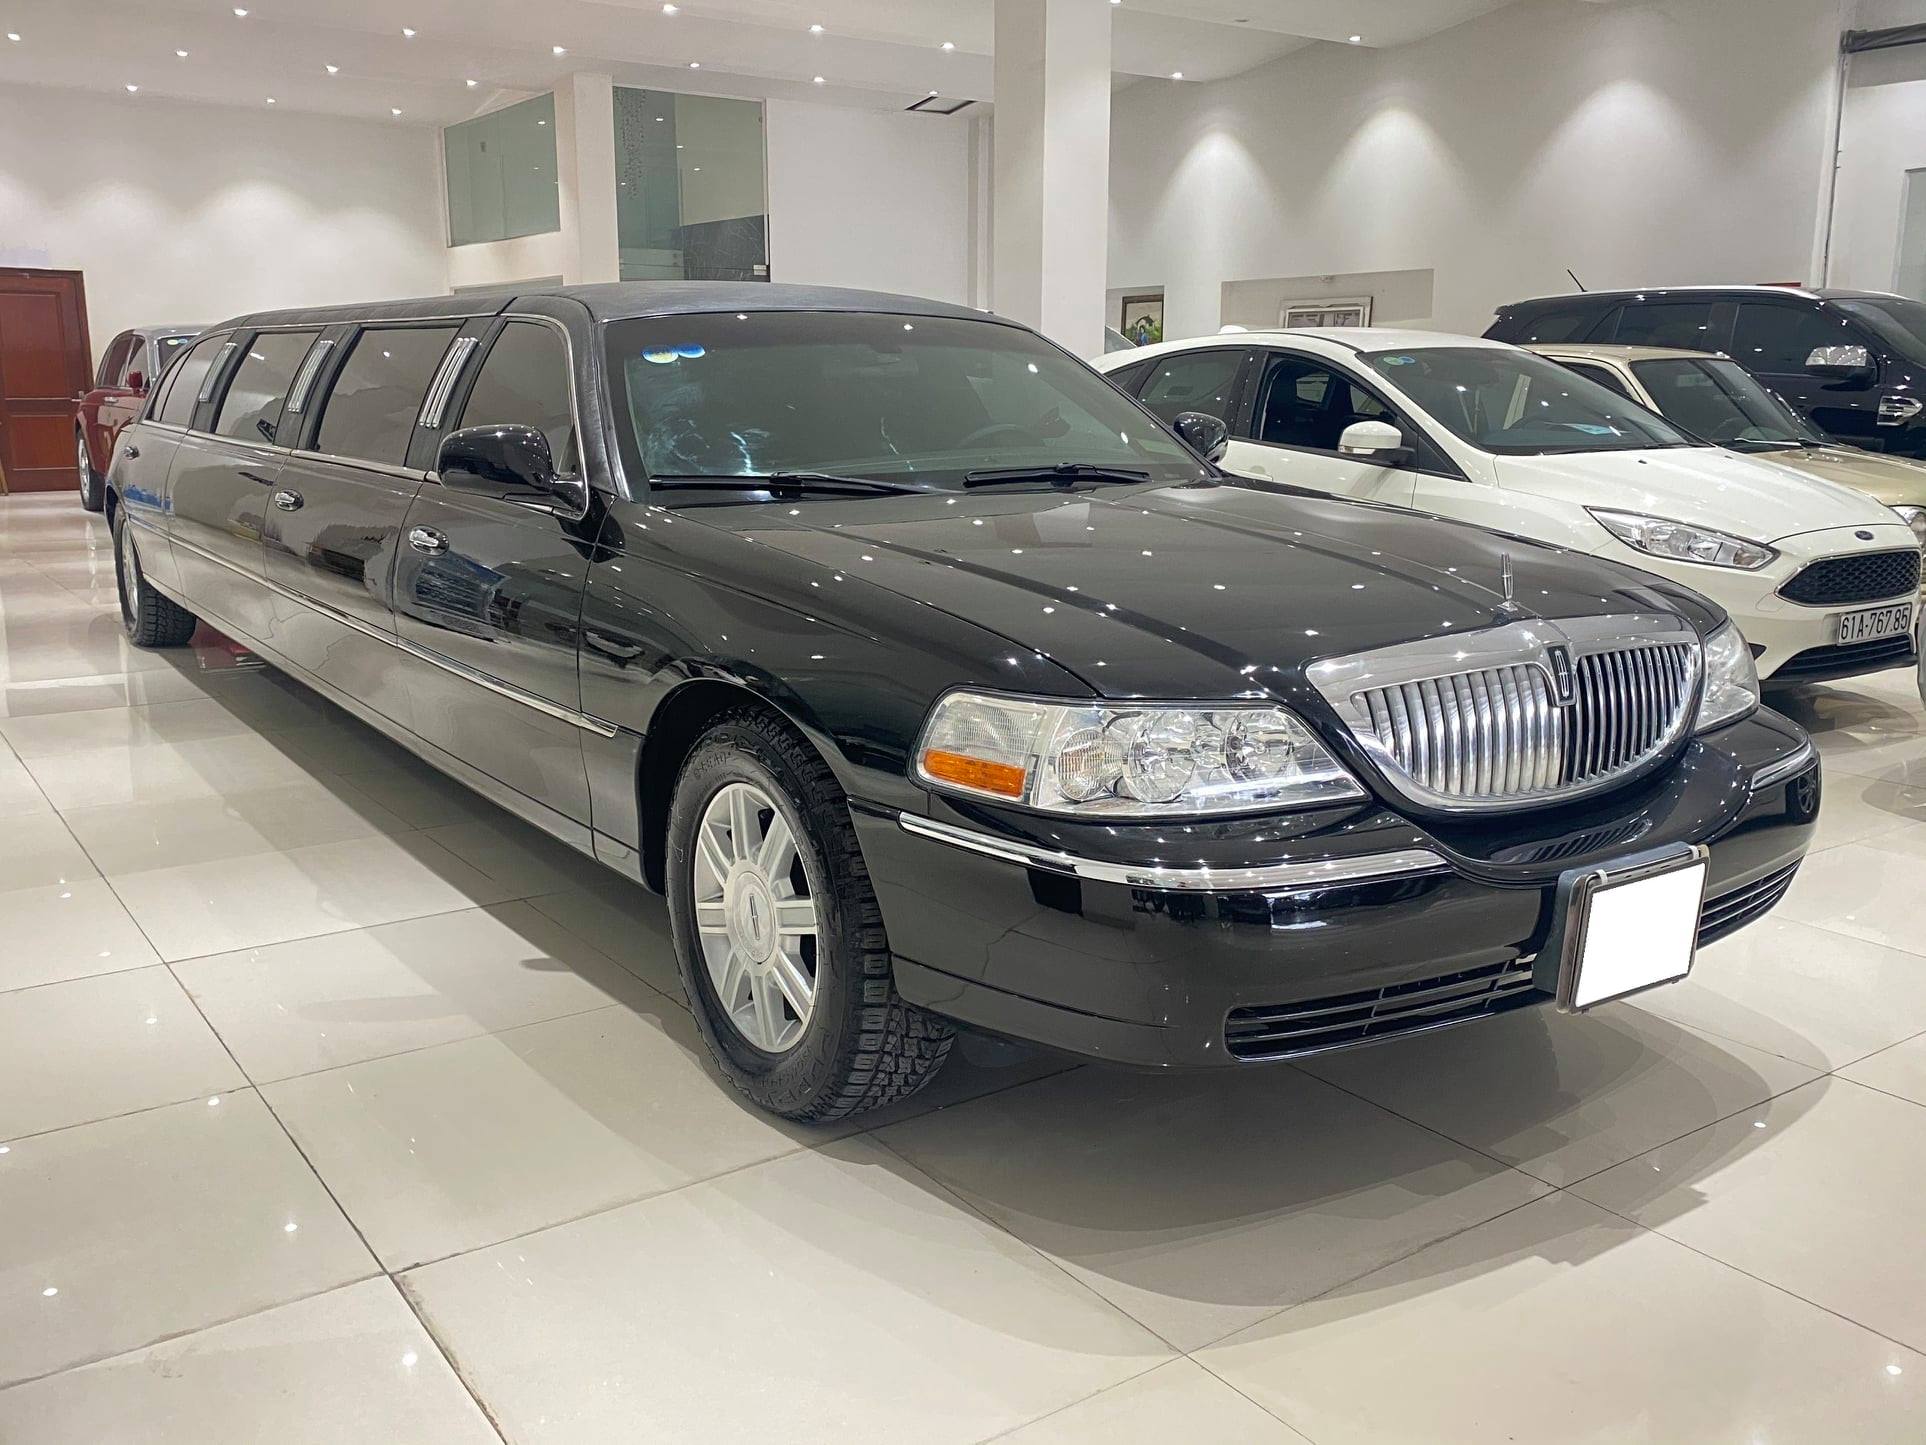 Giữ mới cả thập kỷ, chủ nhân hàng hiếm limousine bán xe với giá chỉ 2,6 tỷ đồng - Ảnh 1.